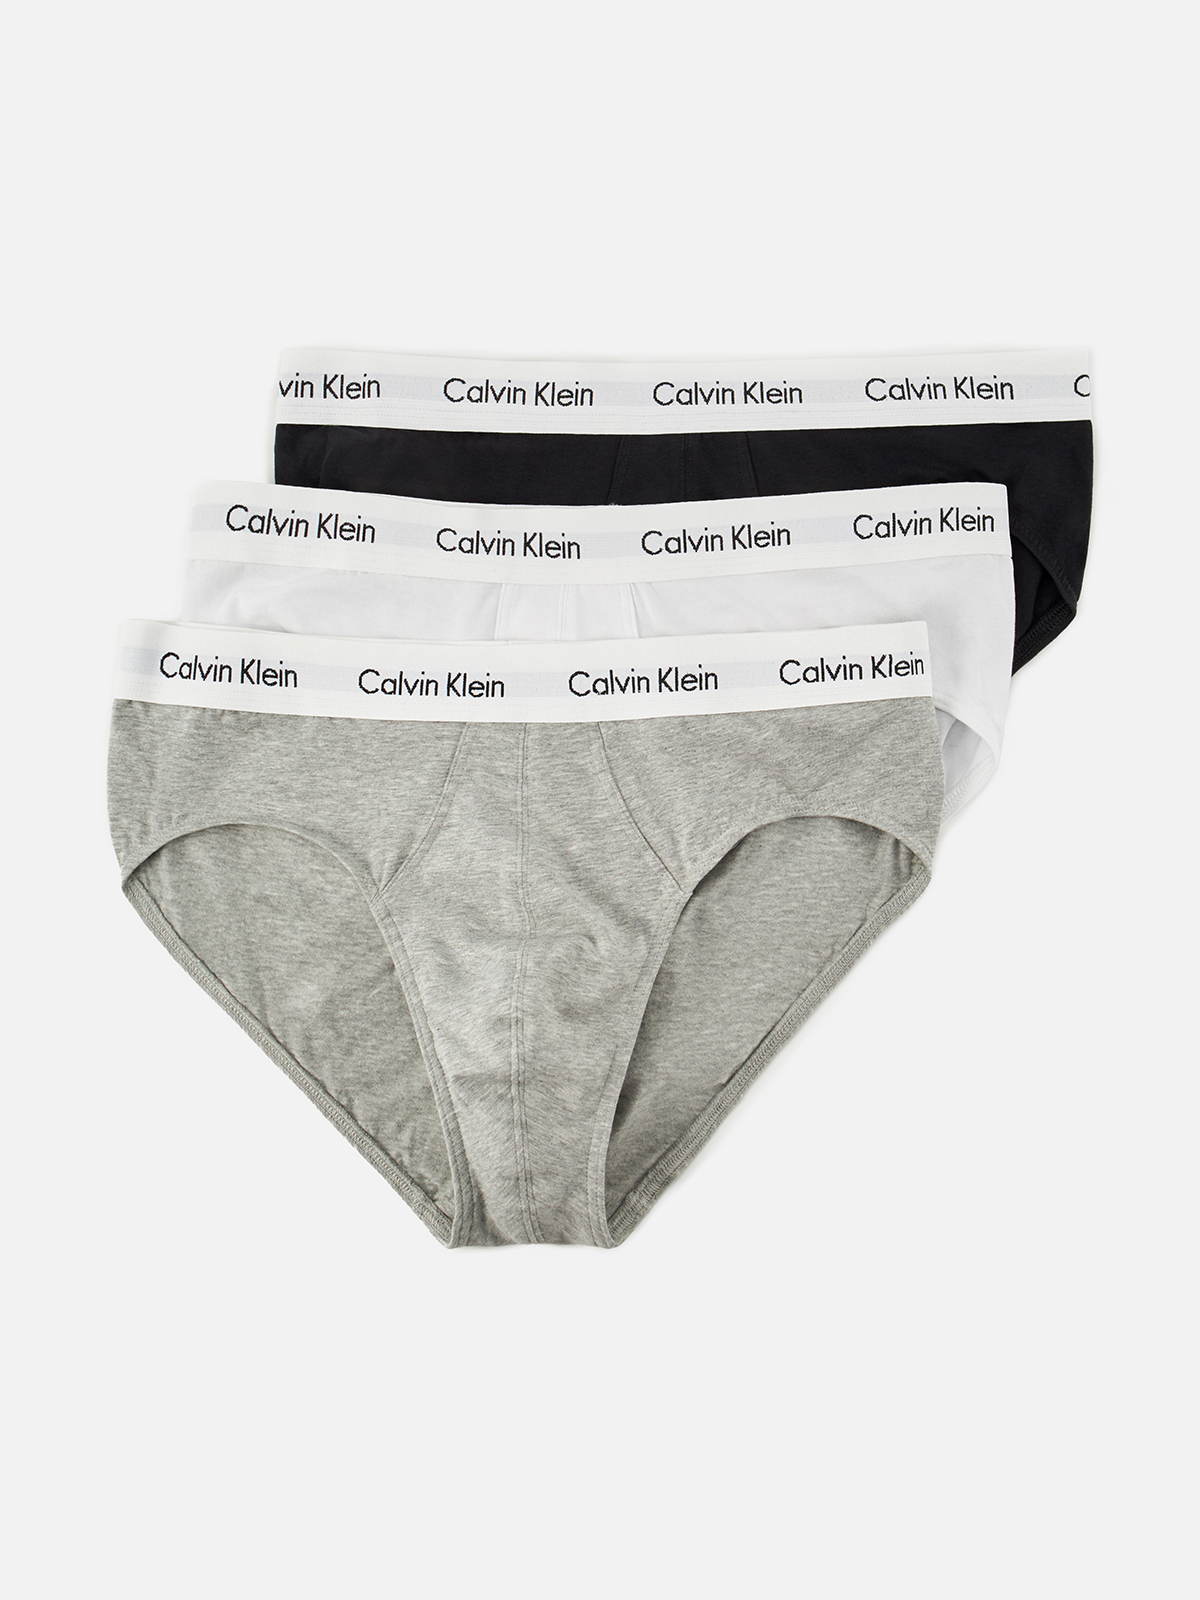 Комплект трусов мужских Calvin Klein Underwear 0000U2661G белых, серых, черных L